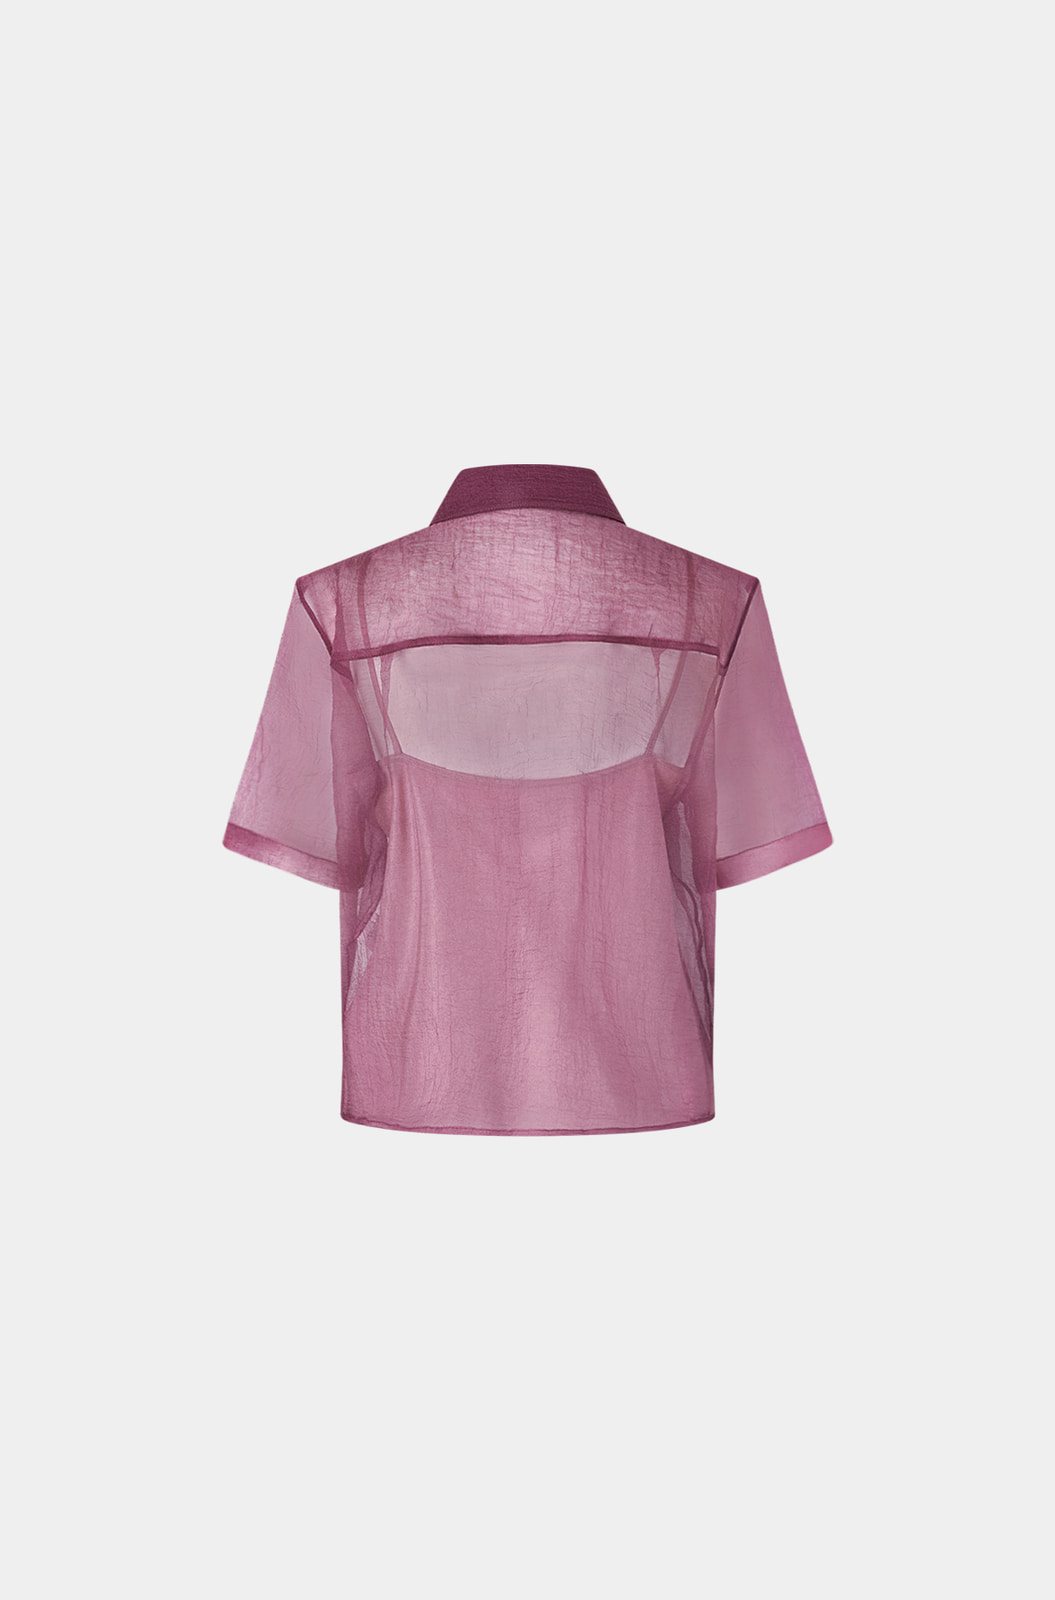 오간자 플랩 포켓 셔츠 - 오키드 핑크